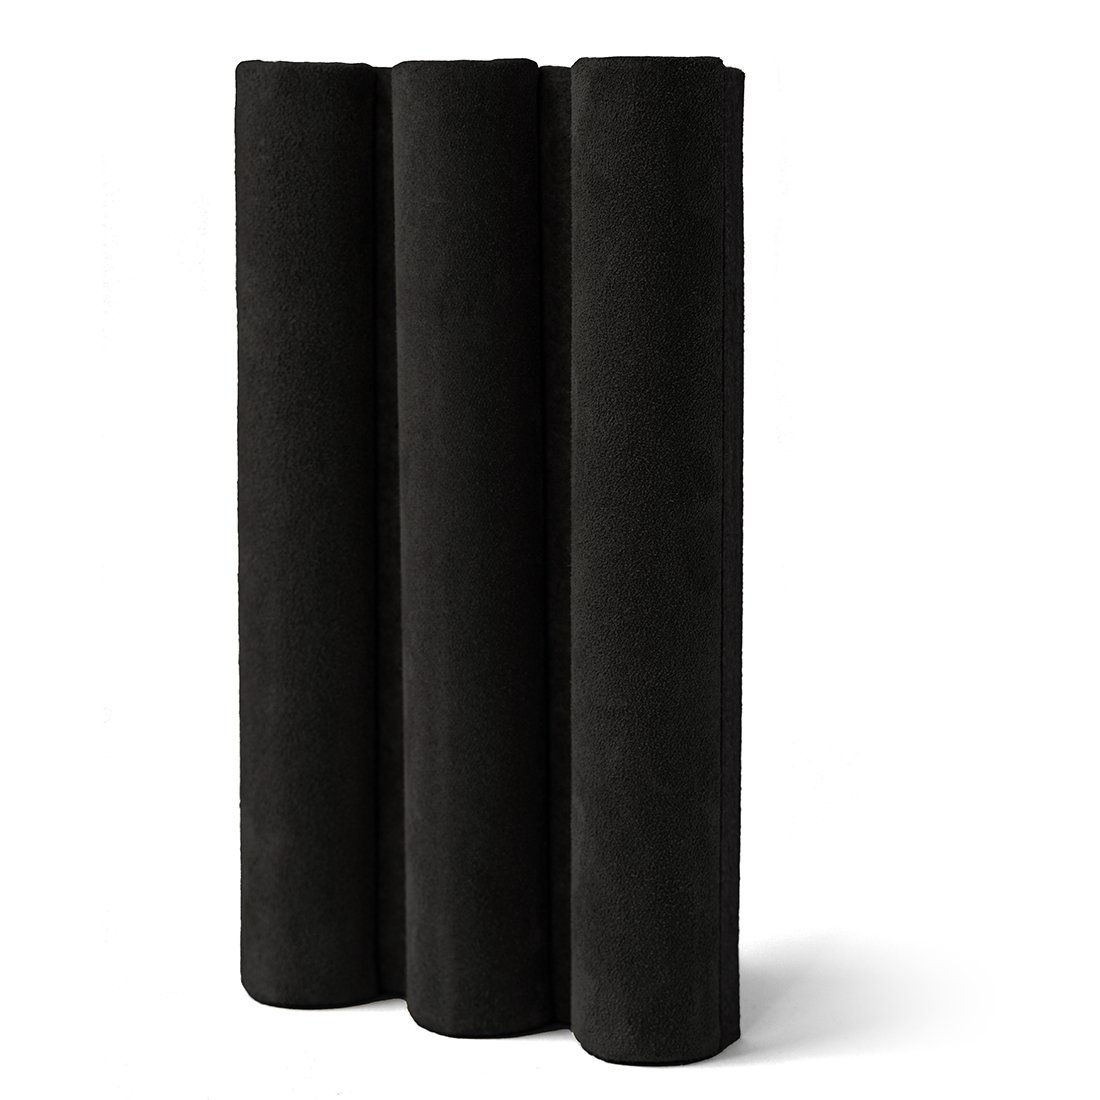 Acoustic Panel Leather Black, 240 x 60 cm